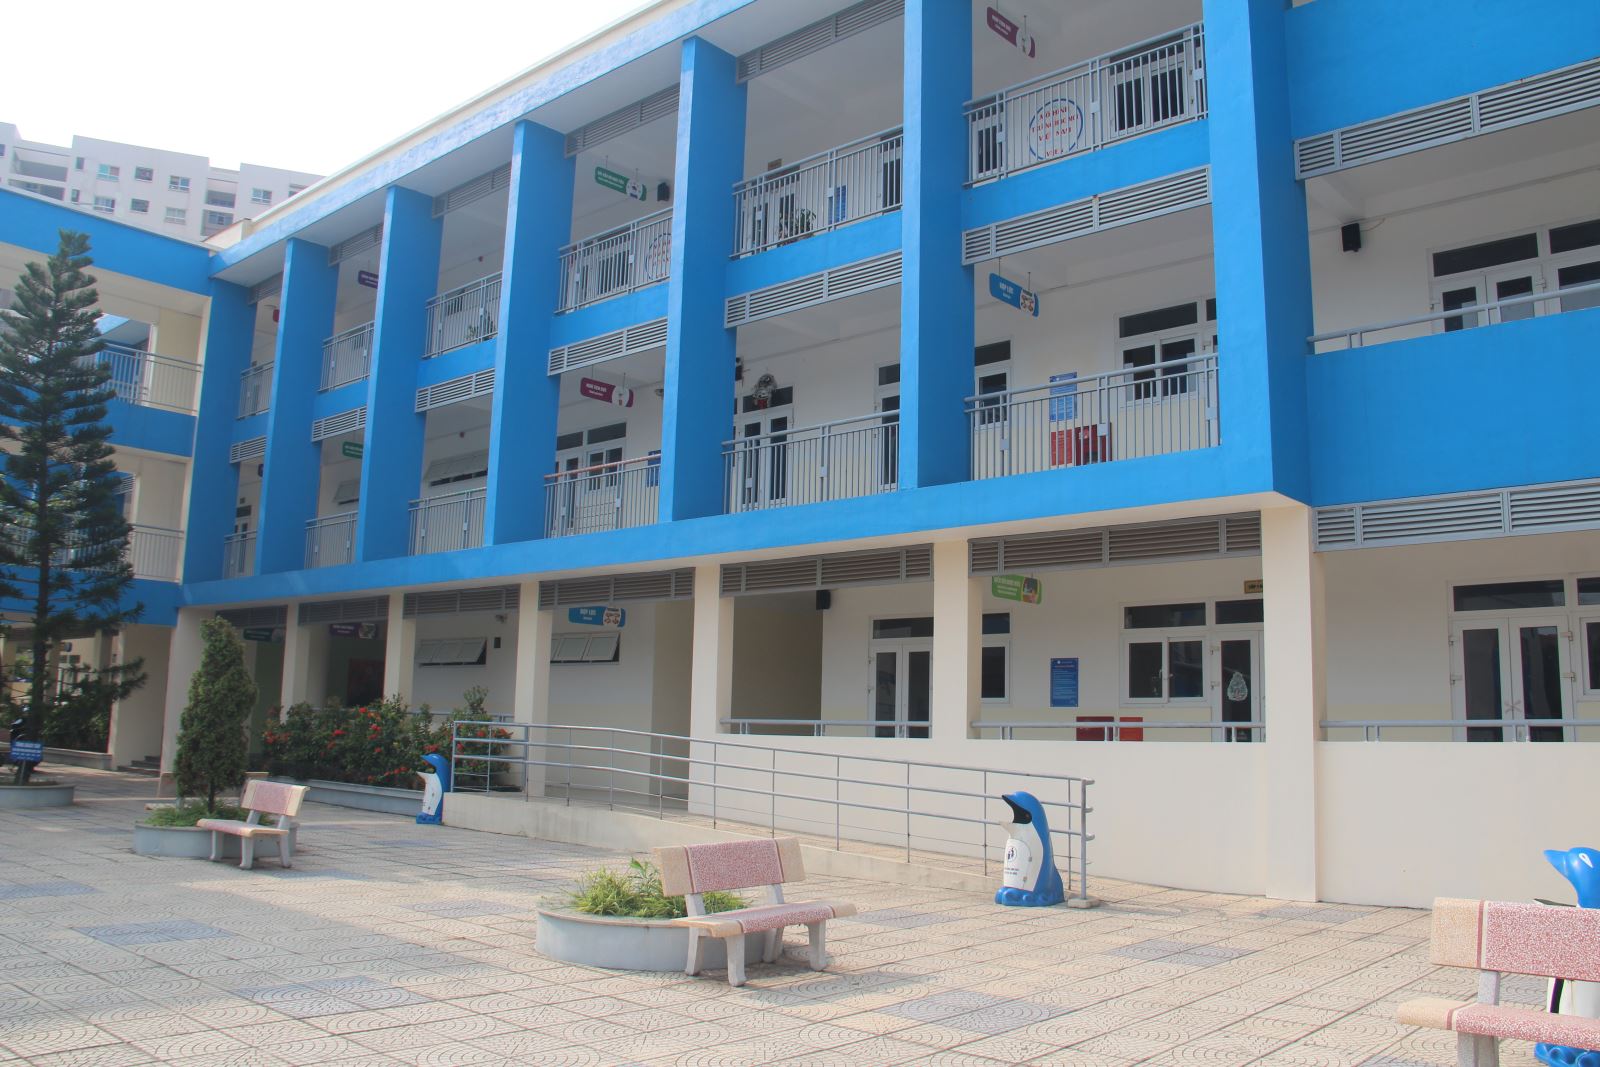 Không phải quận Cầu Giấy hay quận Thanh Xuân, đây mới là quận có nhiều trường CÔNG LẬP CHẤT LƯỢNG CAO nhất Hà Nội- Ảnh 8.